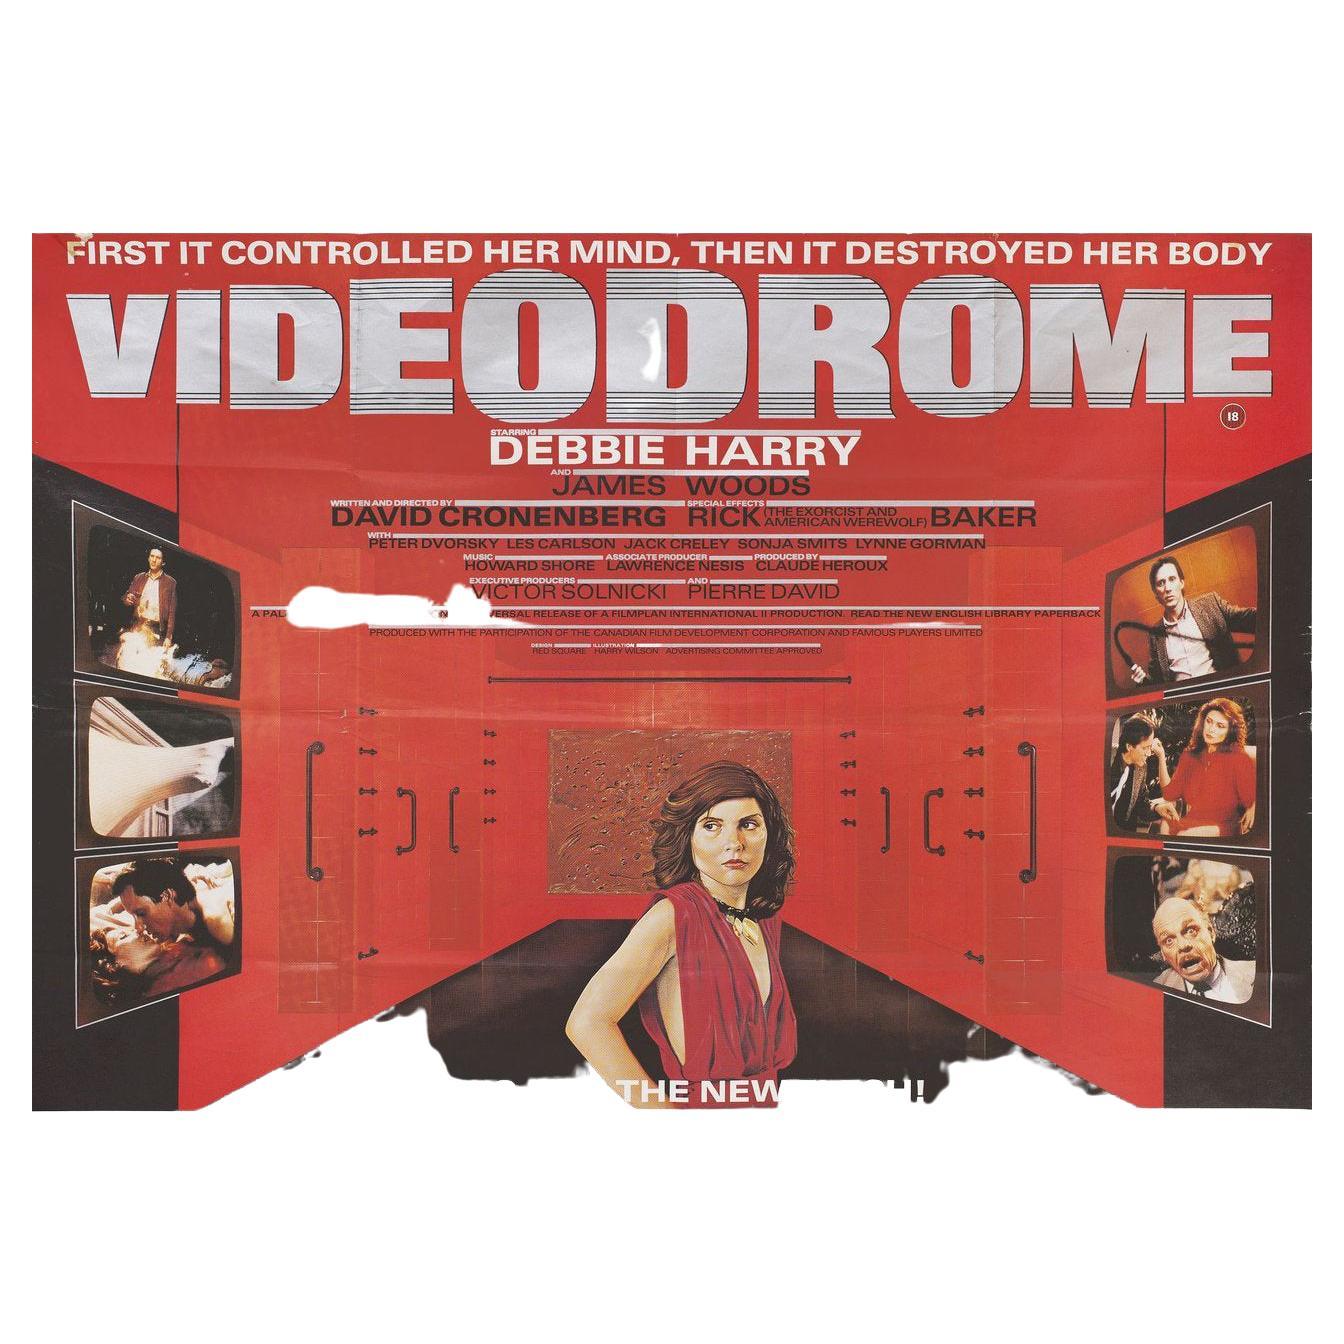 Videodrome 1983 British Quad Film Poster